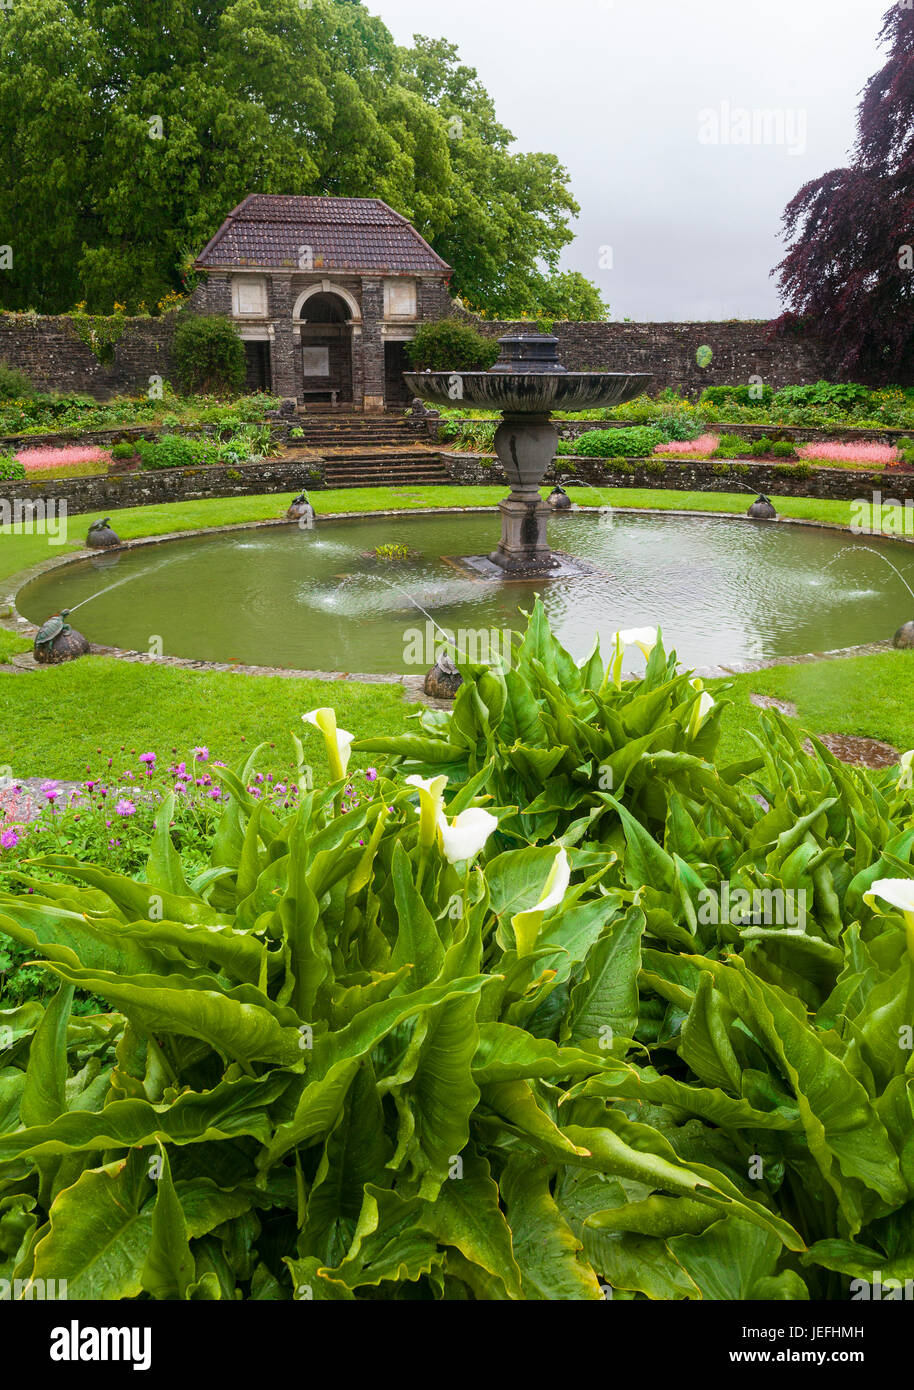 Heywood Gärten an einem nassen Regentag; entworfen von dem berühmten Architekten Sir Edwin Lutyens, Ballinakill, County Laois, Irland Stockfoto